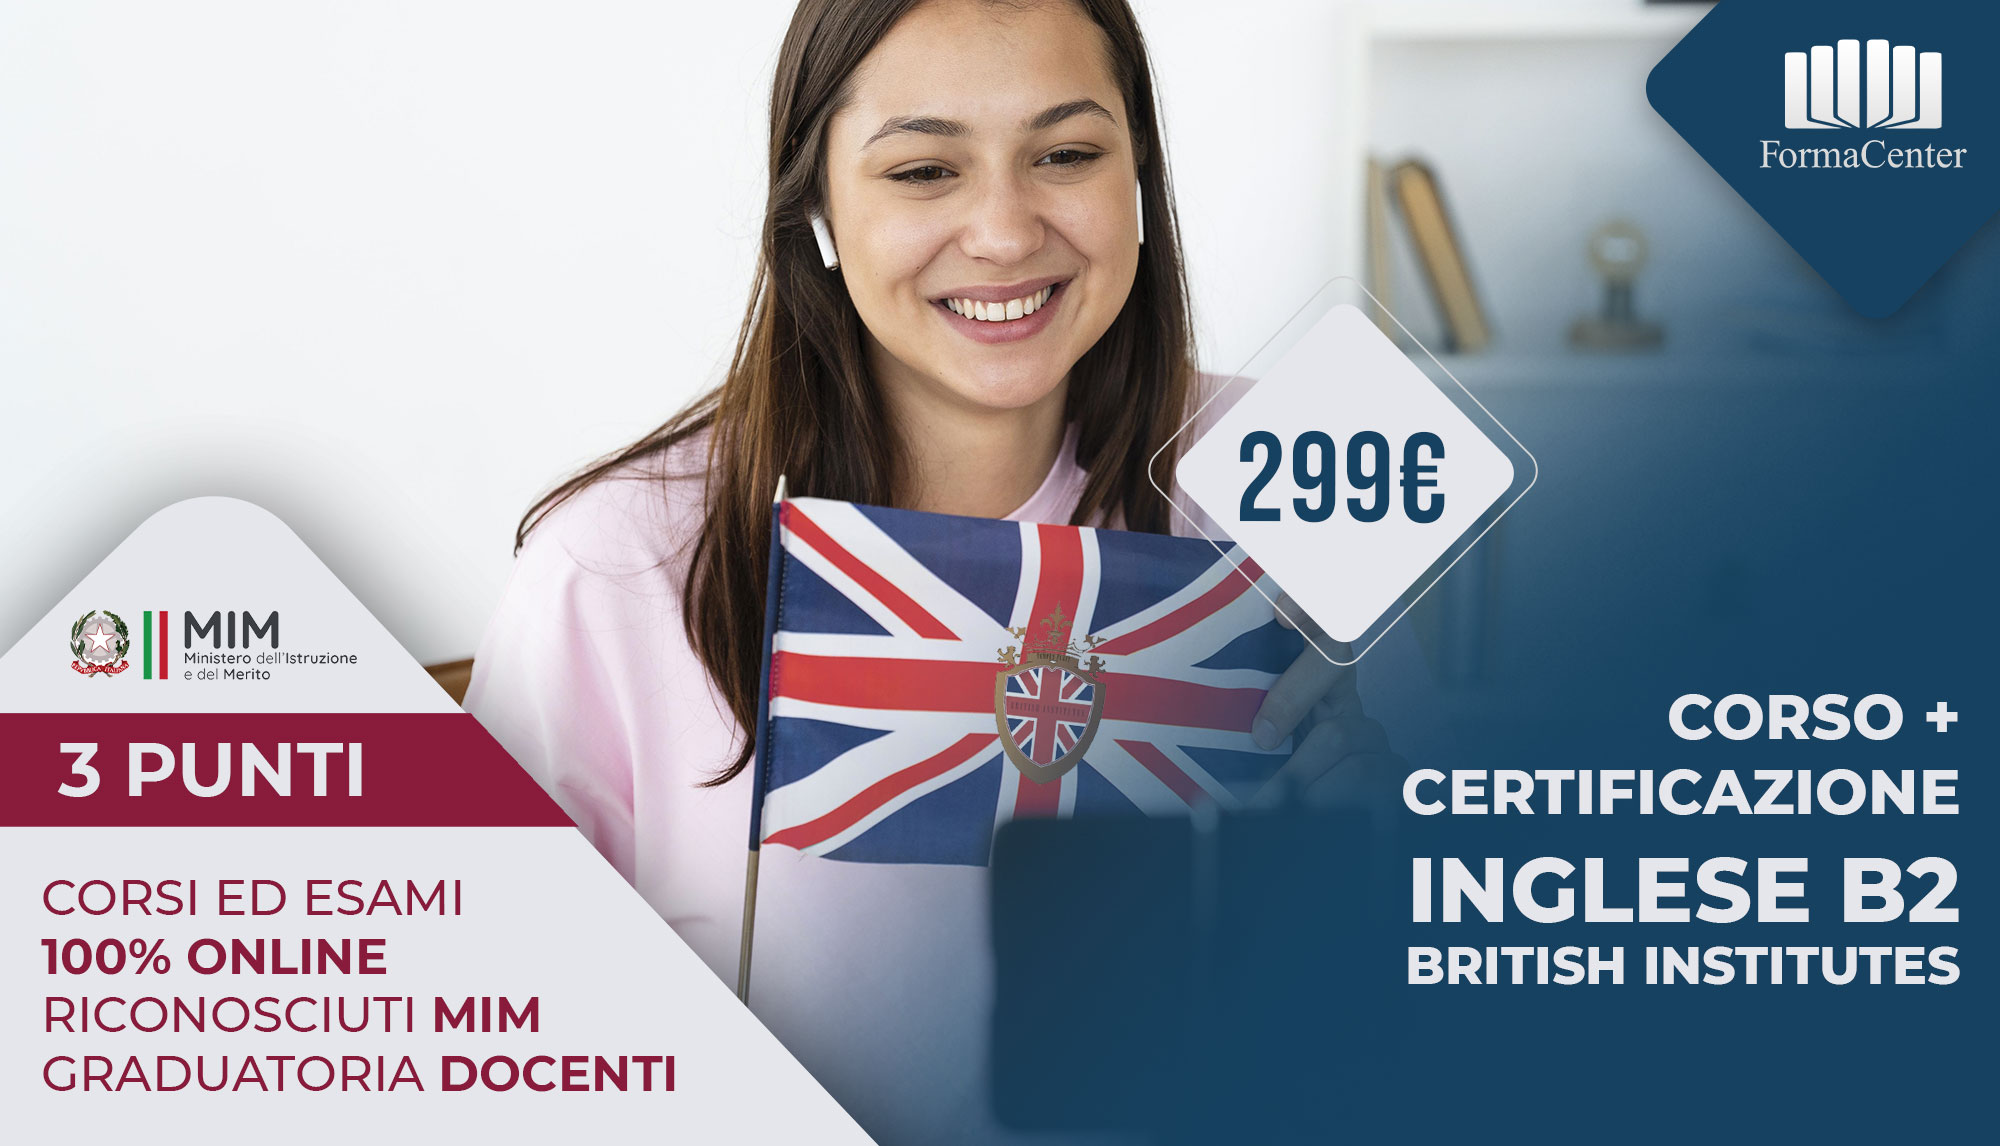 Corso + Certificazione Inglese B2 - Certificazioni Linguistiche 